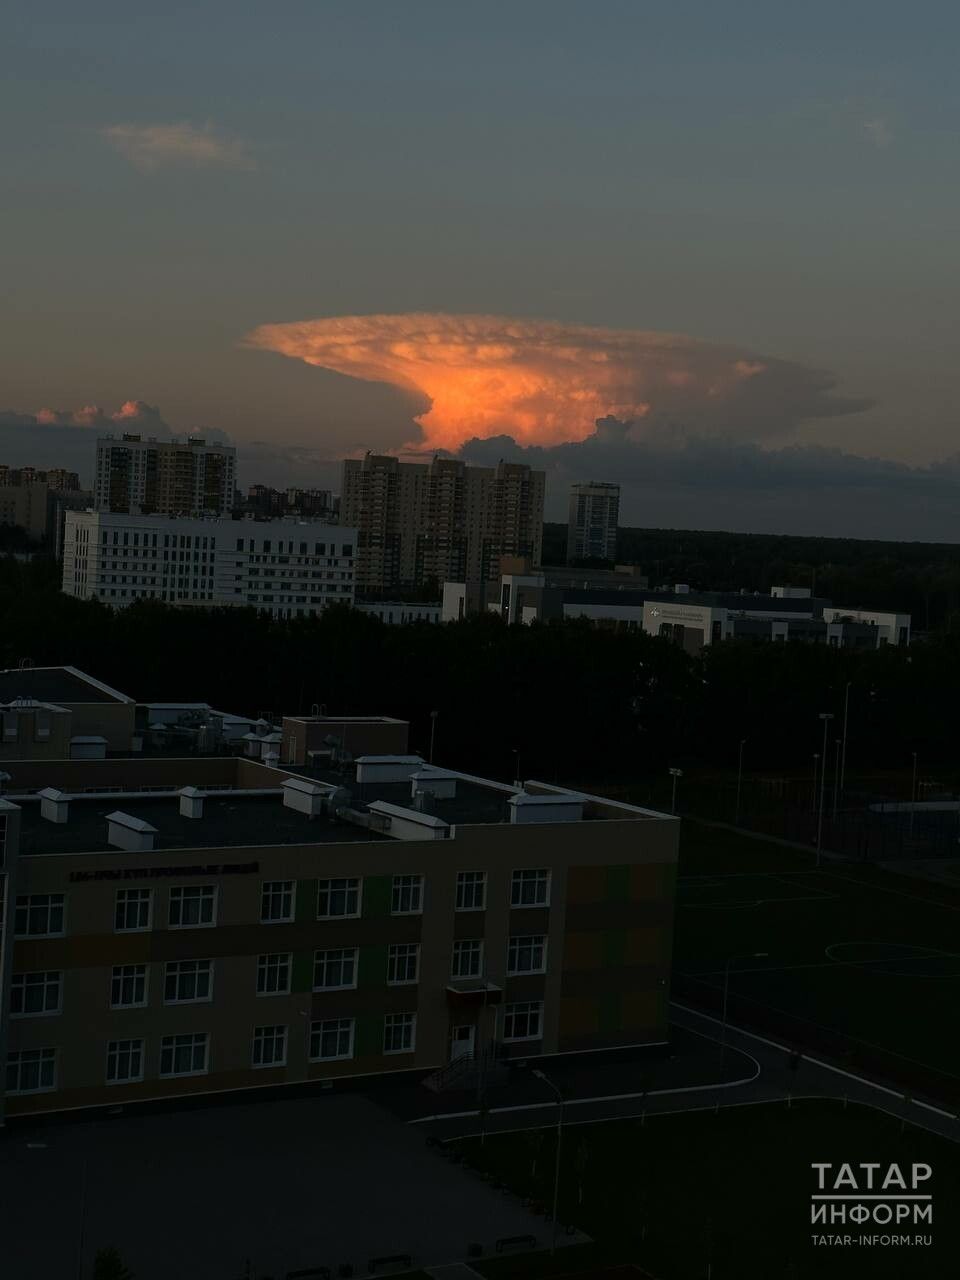 Гигантское облако-гриб поразило жителей Казани